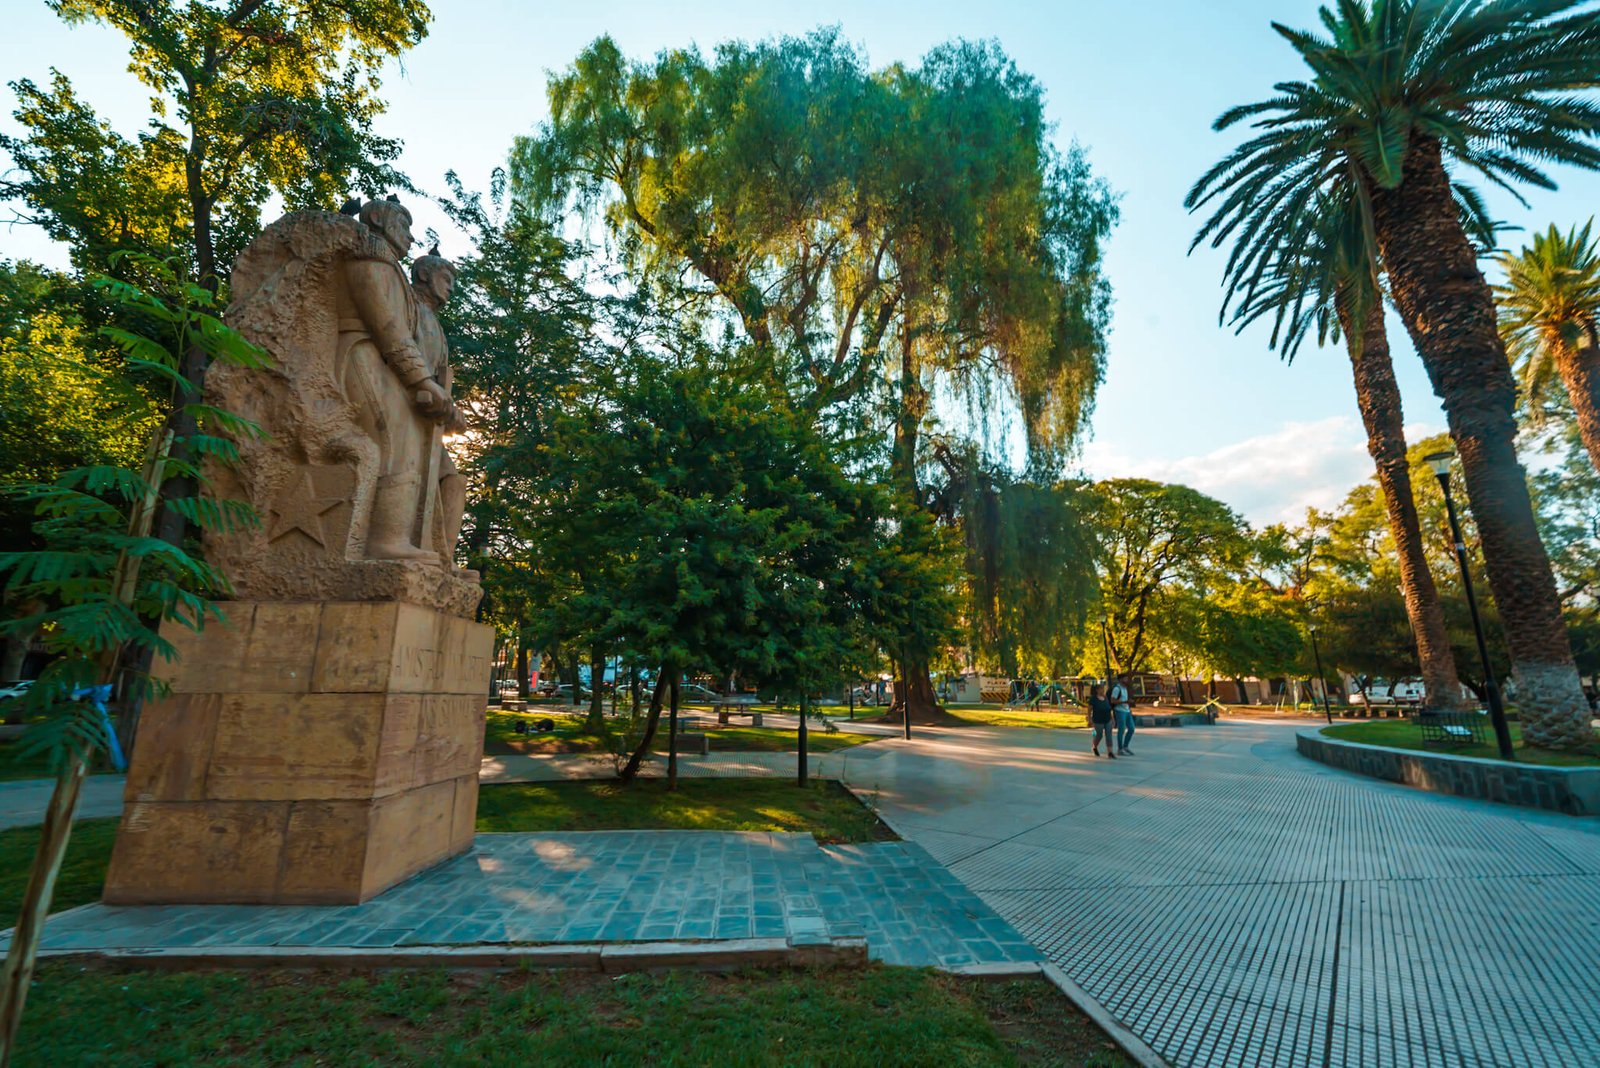 plaza in Mendoza, Argentina